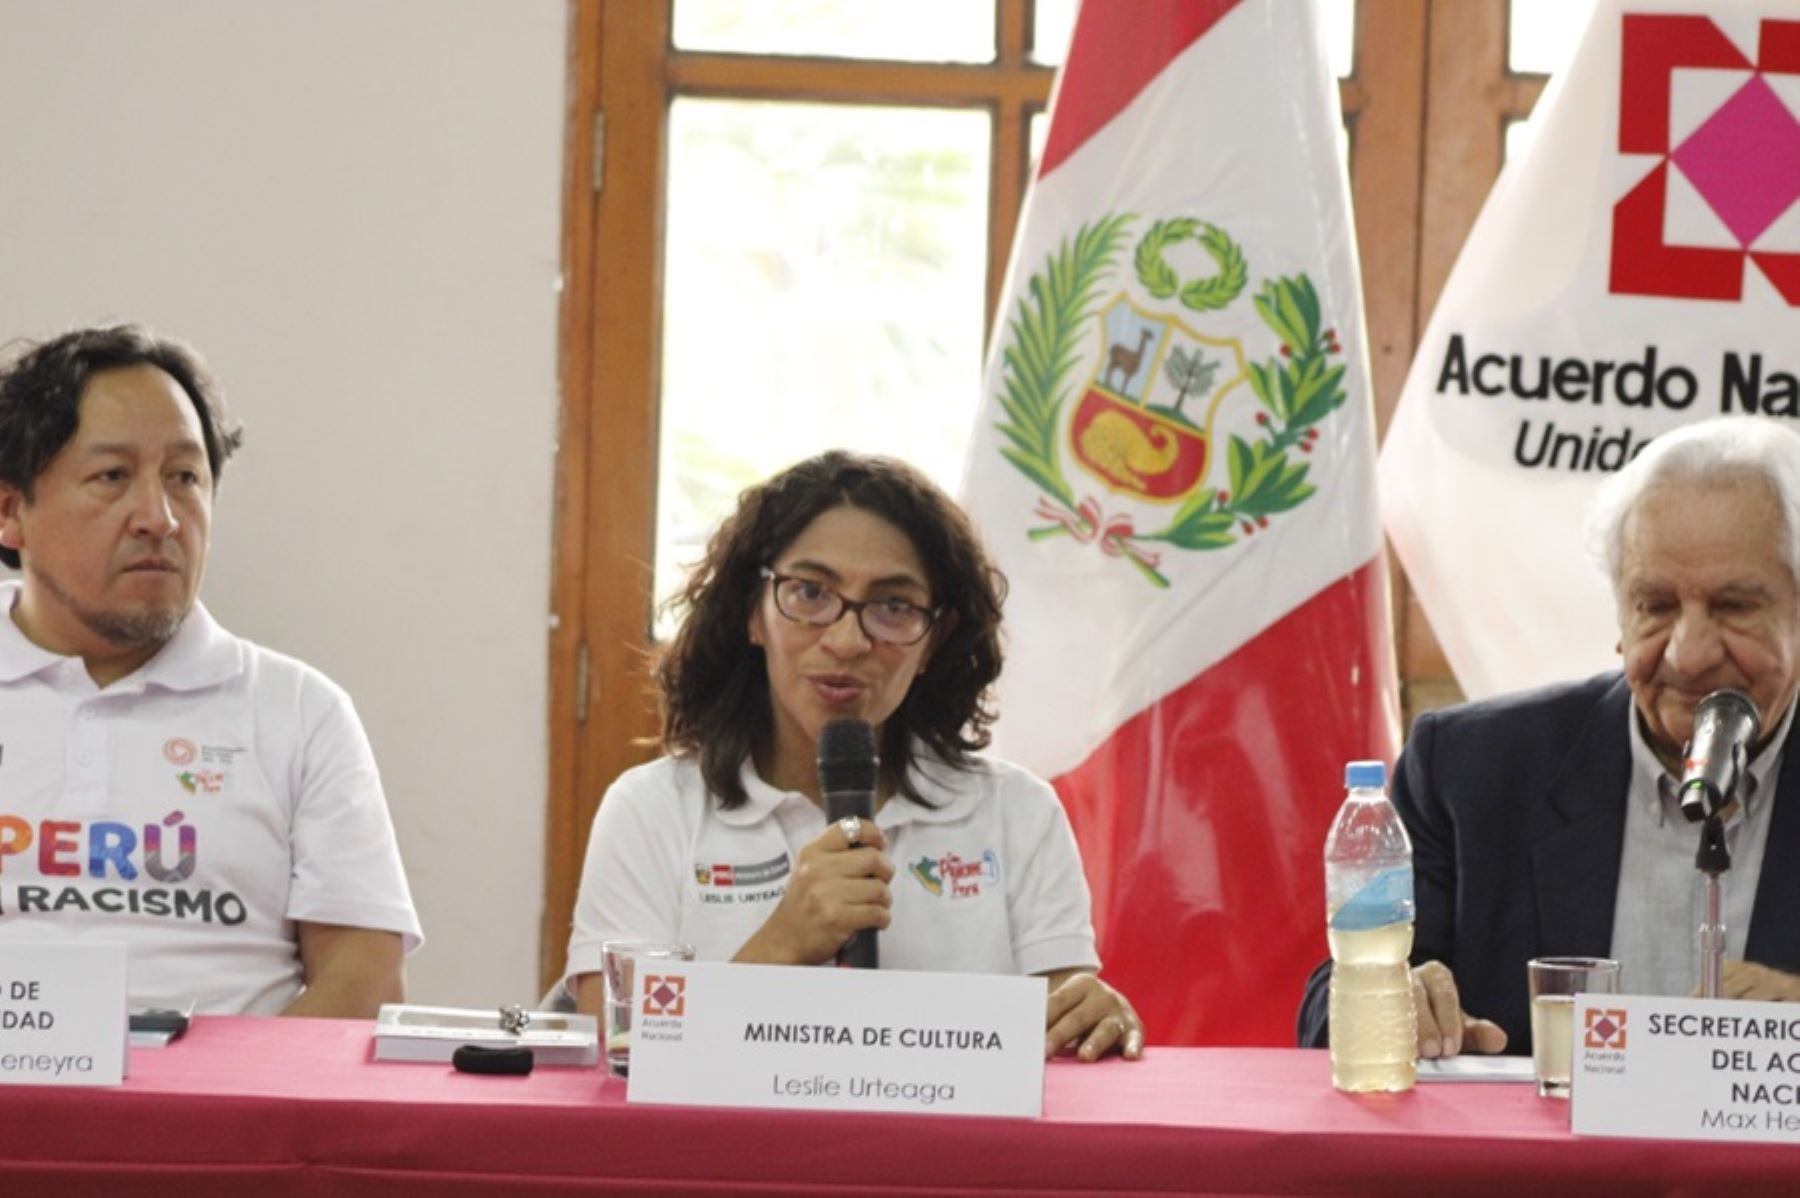 La ministra de Cultura, Leslie Urteaga participó en el Encuentro Descentralizado del Foro del Acuerdo Nacional, desarrollado en la ciudad de Iquitos, capital de la región Loreto, donde estuvieron autoridades nacionales, regionales y locales, y representantes de organizaciones de los pueblos indígenas.